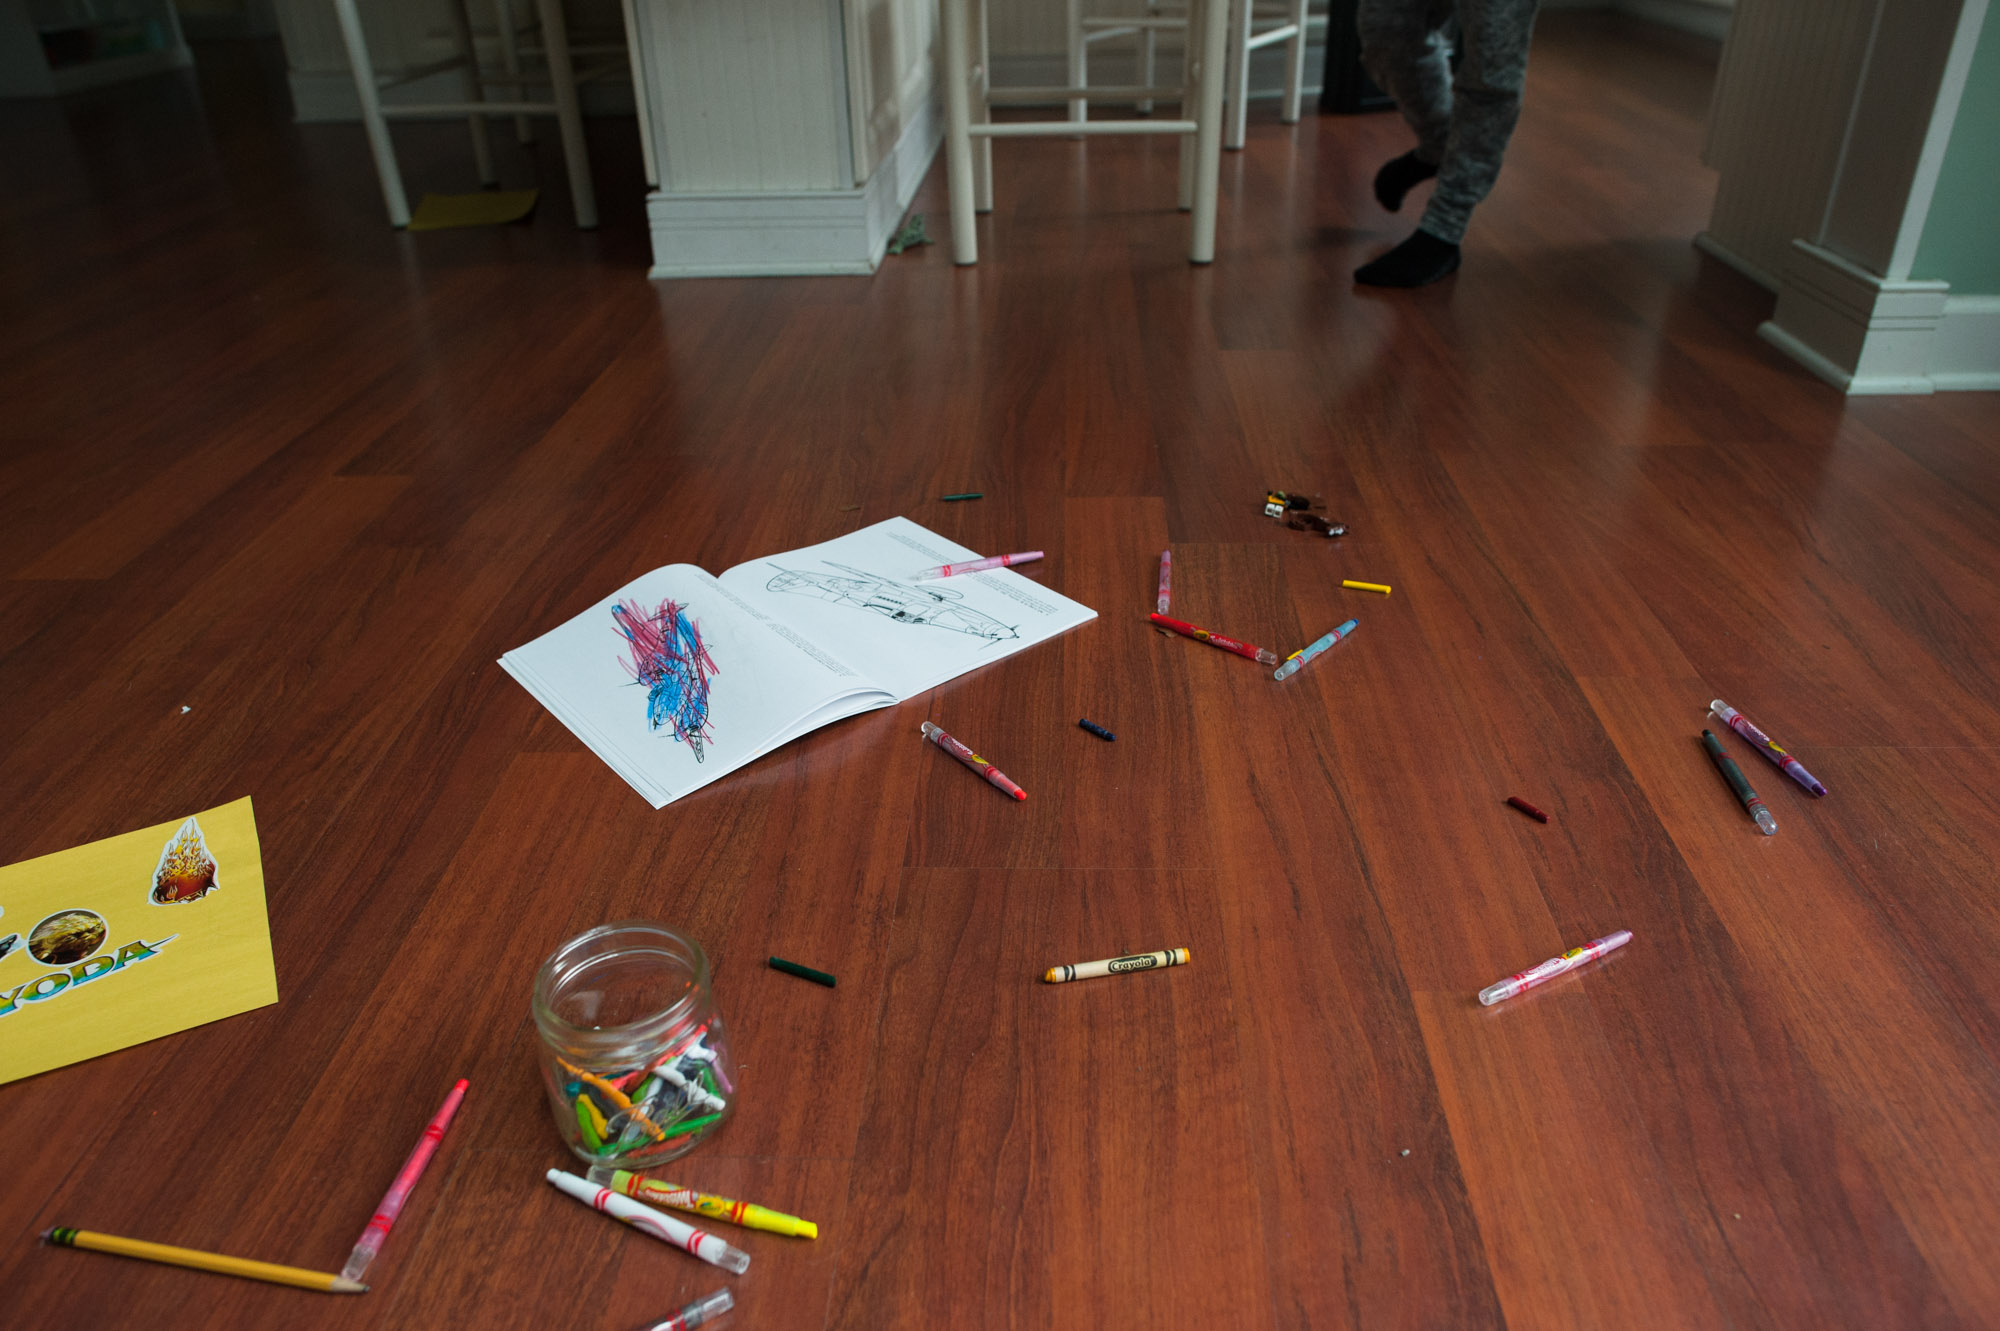 crayons spread across floor - documentary family photography